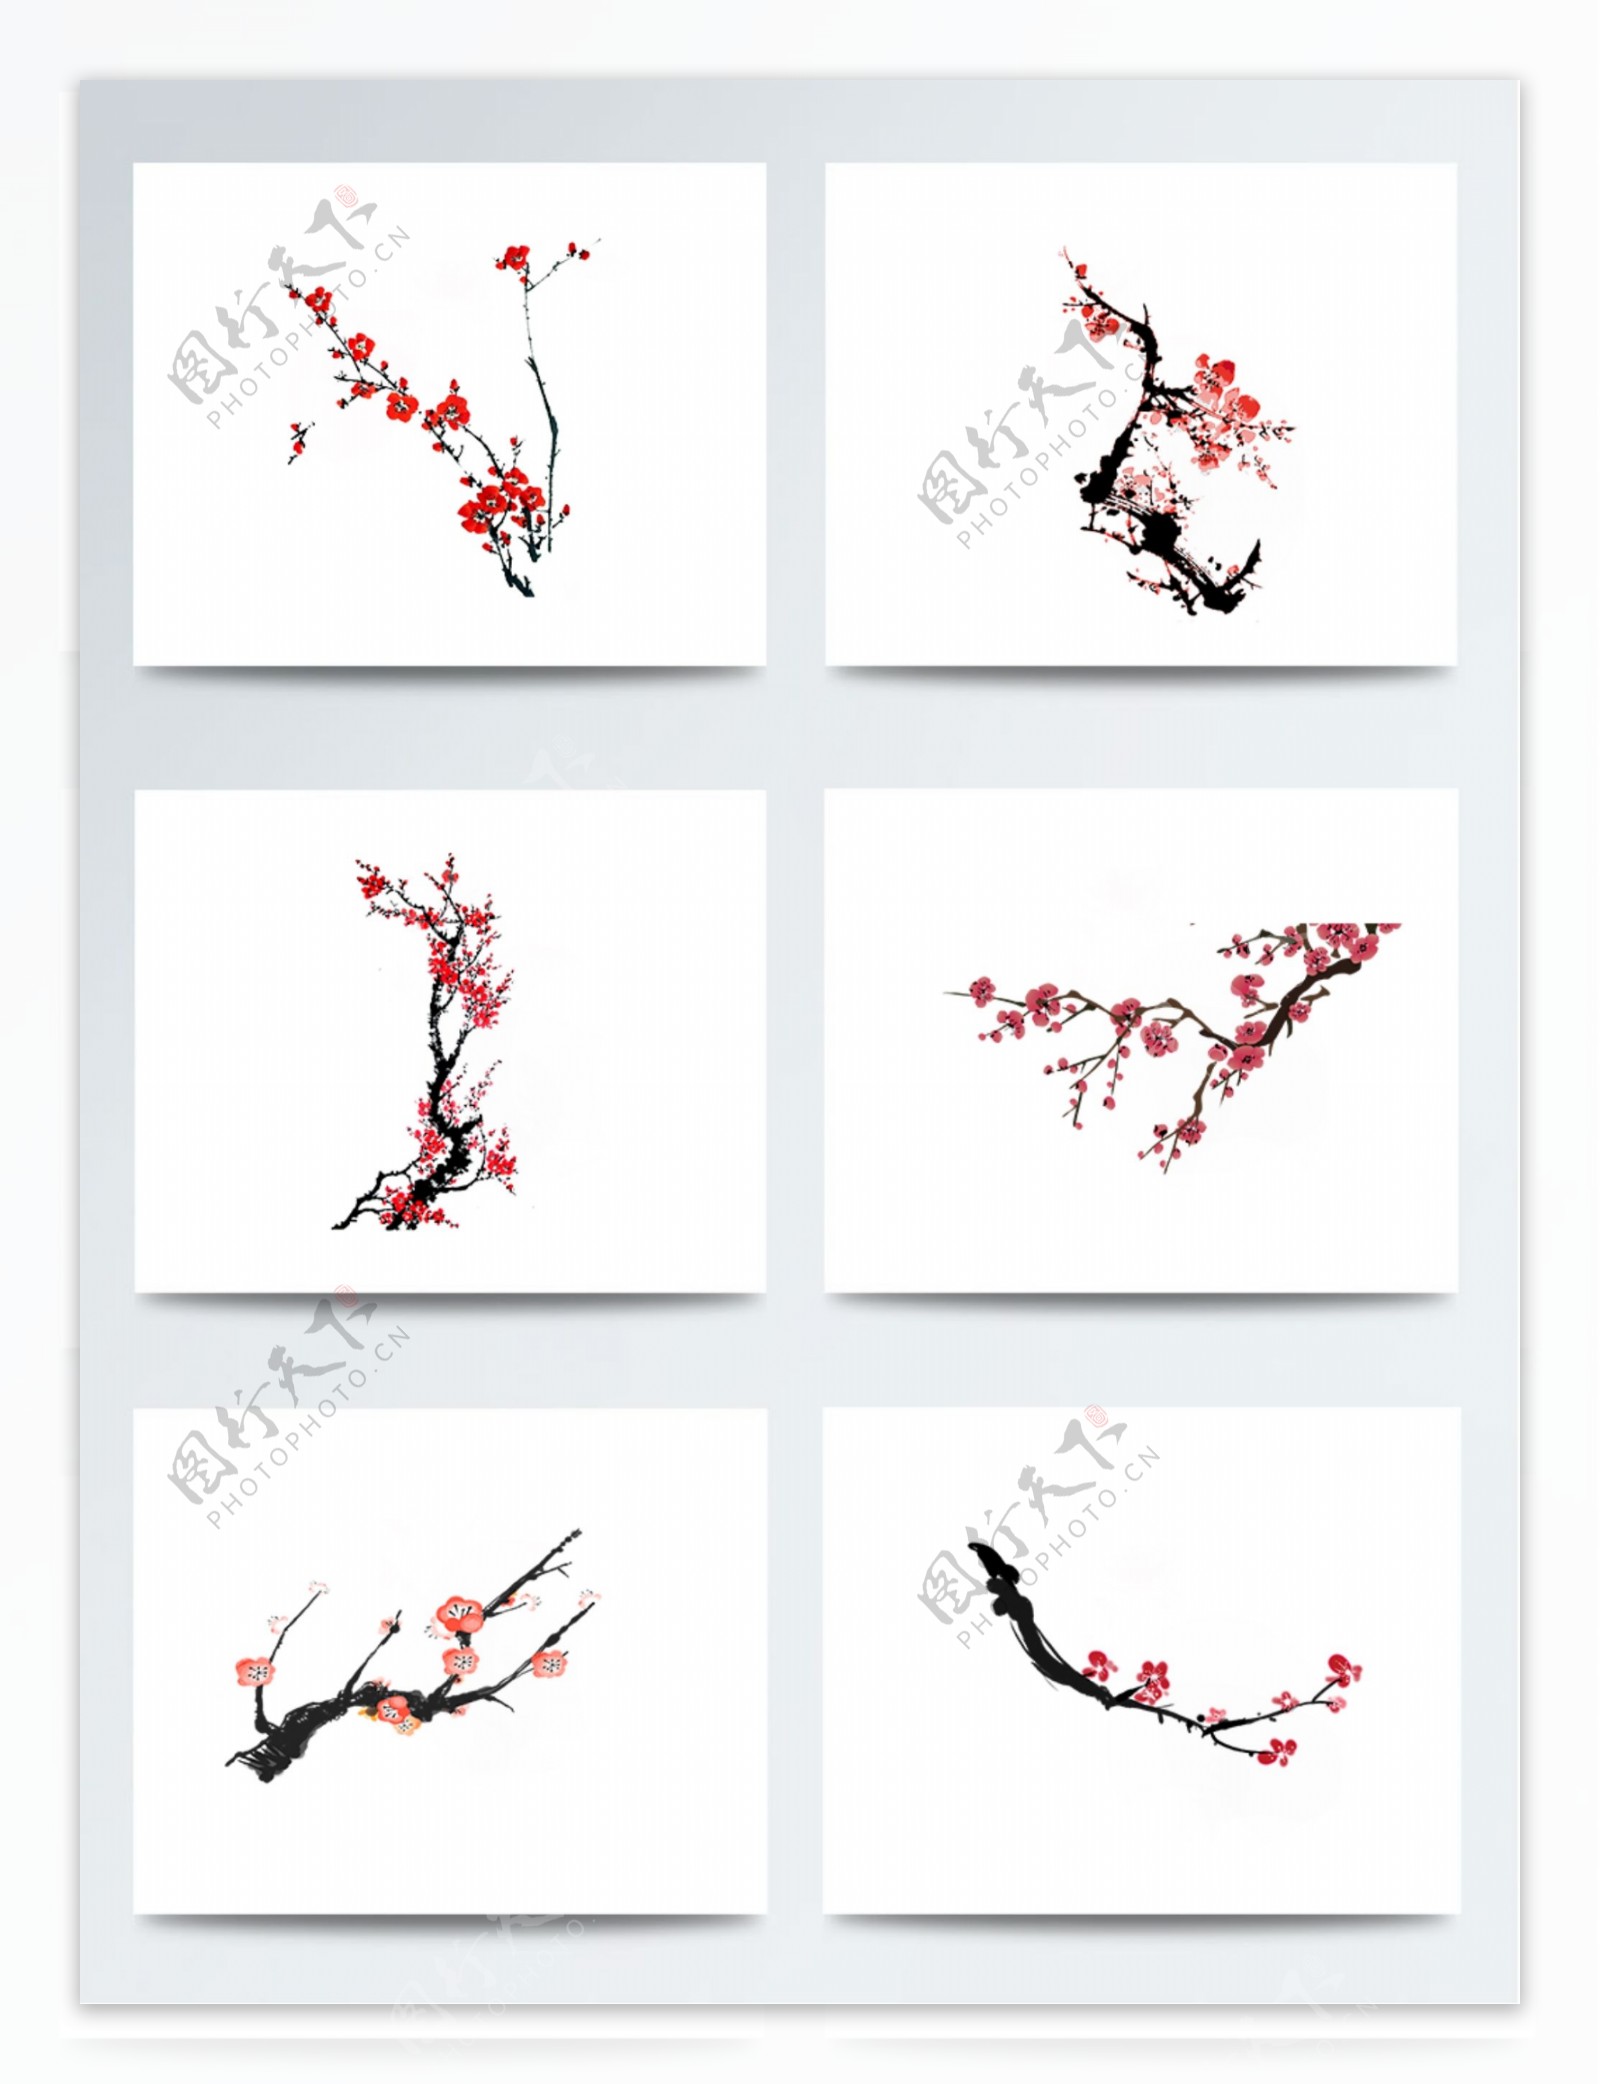 中国风水墨手绘梅花设计素材图